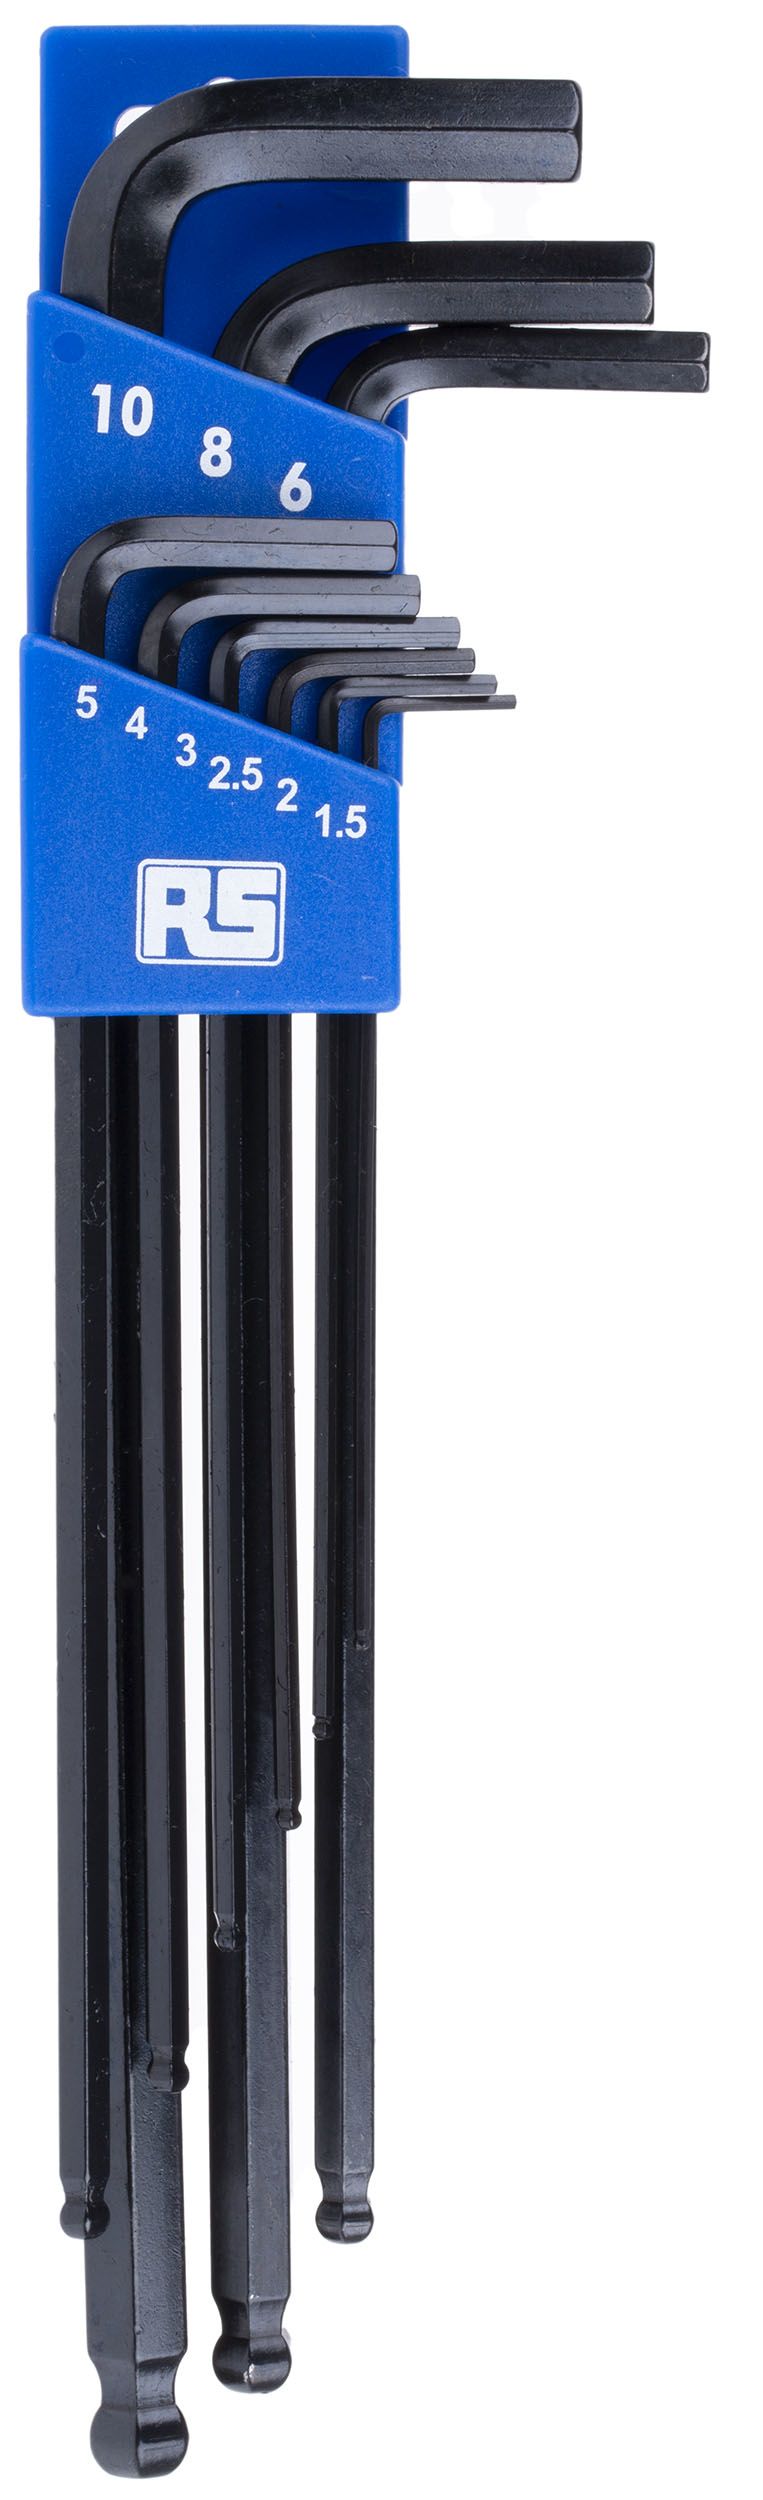 RS PRO 9 piece Hex Key Set,  L Shape 1.5mm Ball End